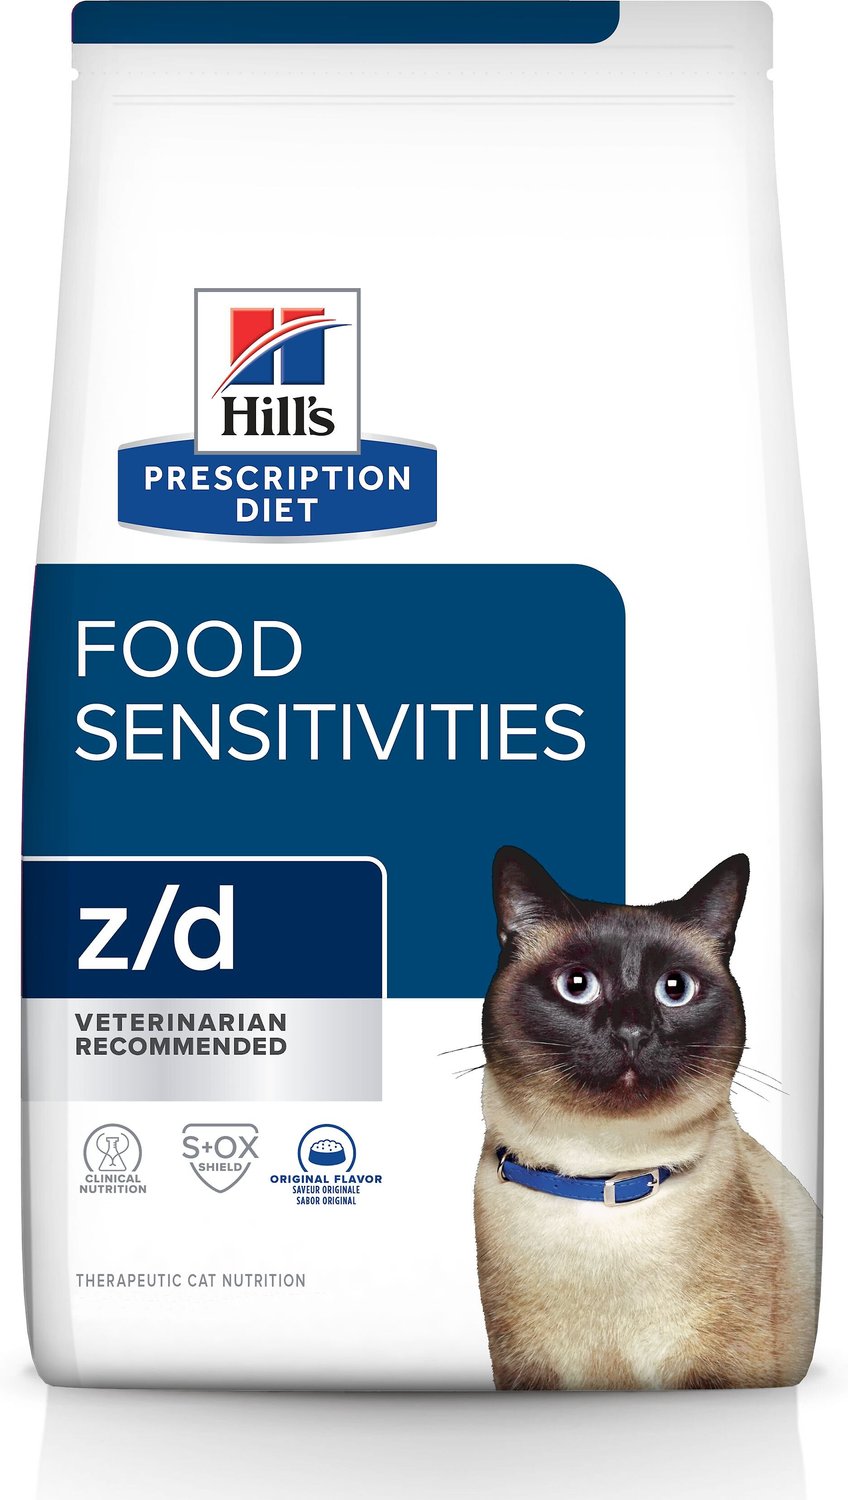 hydrolyzed protein cat food